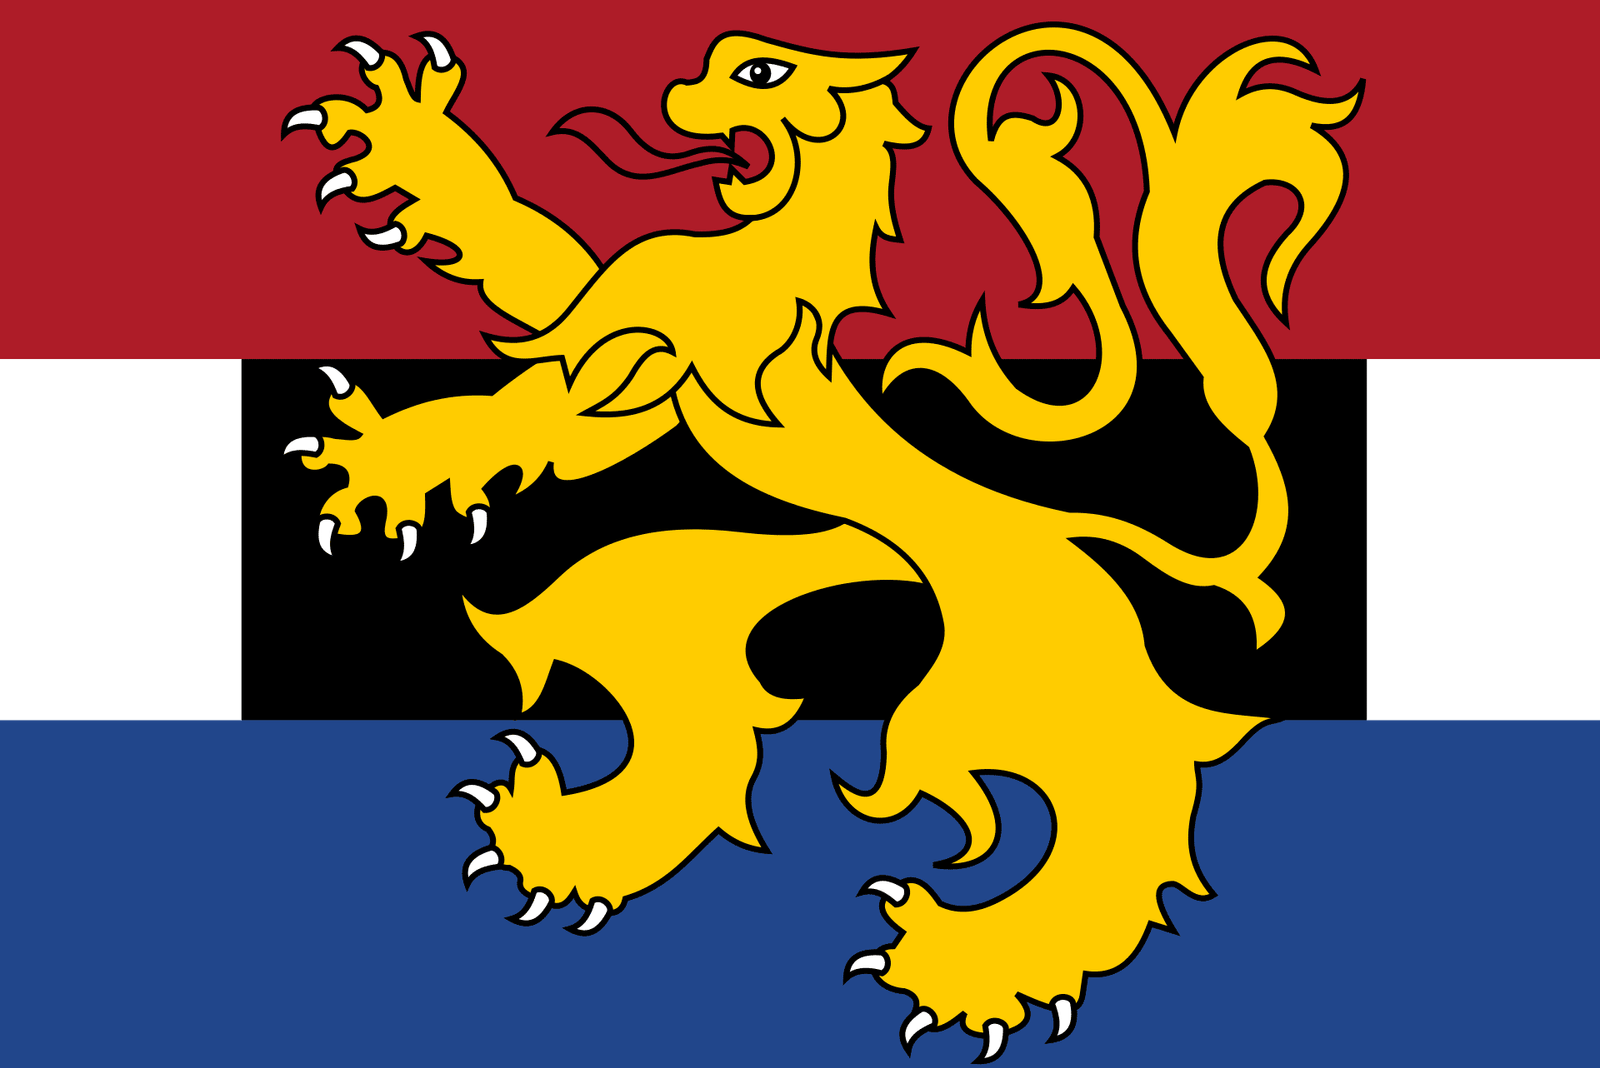 Flag of Benelux Union